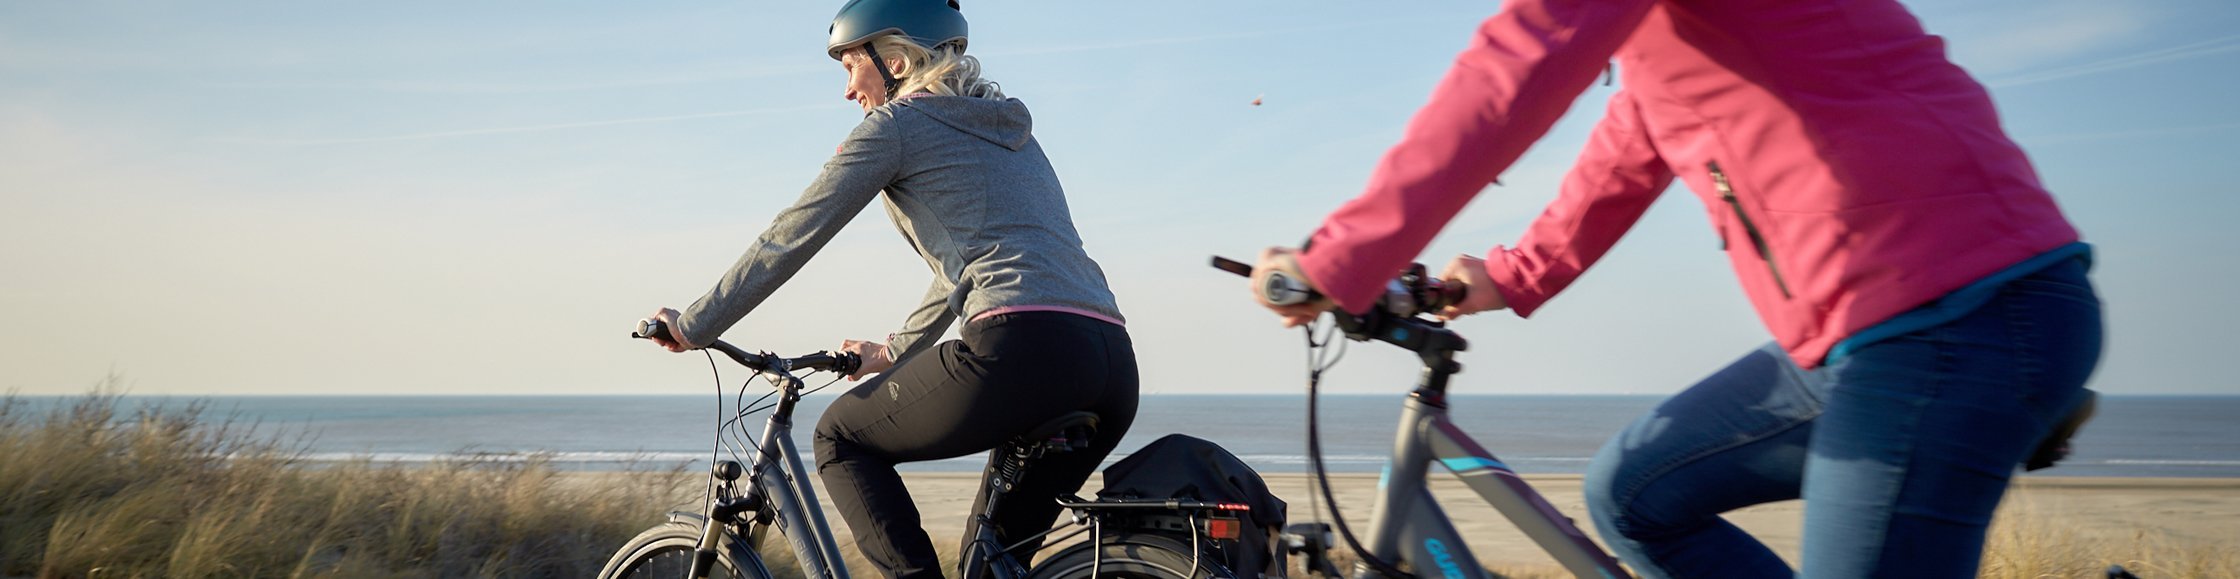 Terry Fahrradsättel, 2 Frauen auf Fahrradtour am Meer